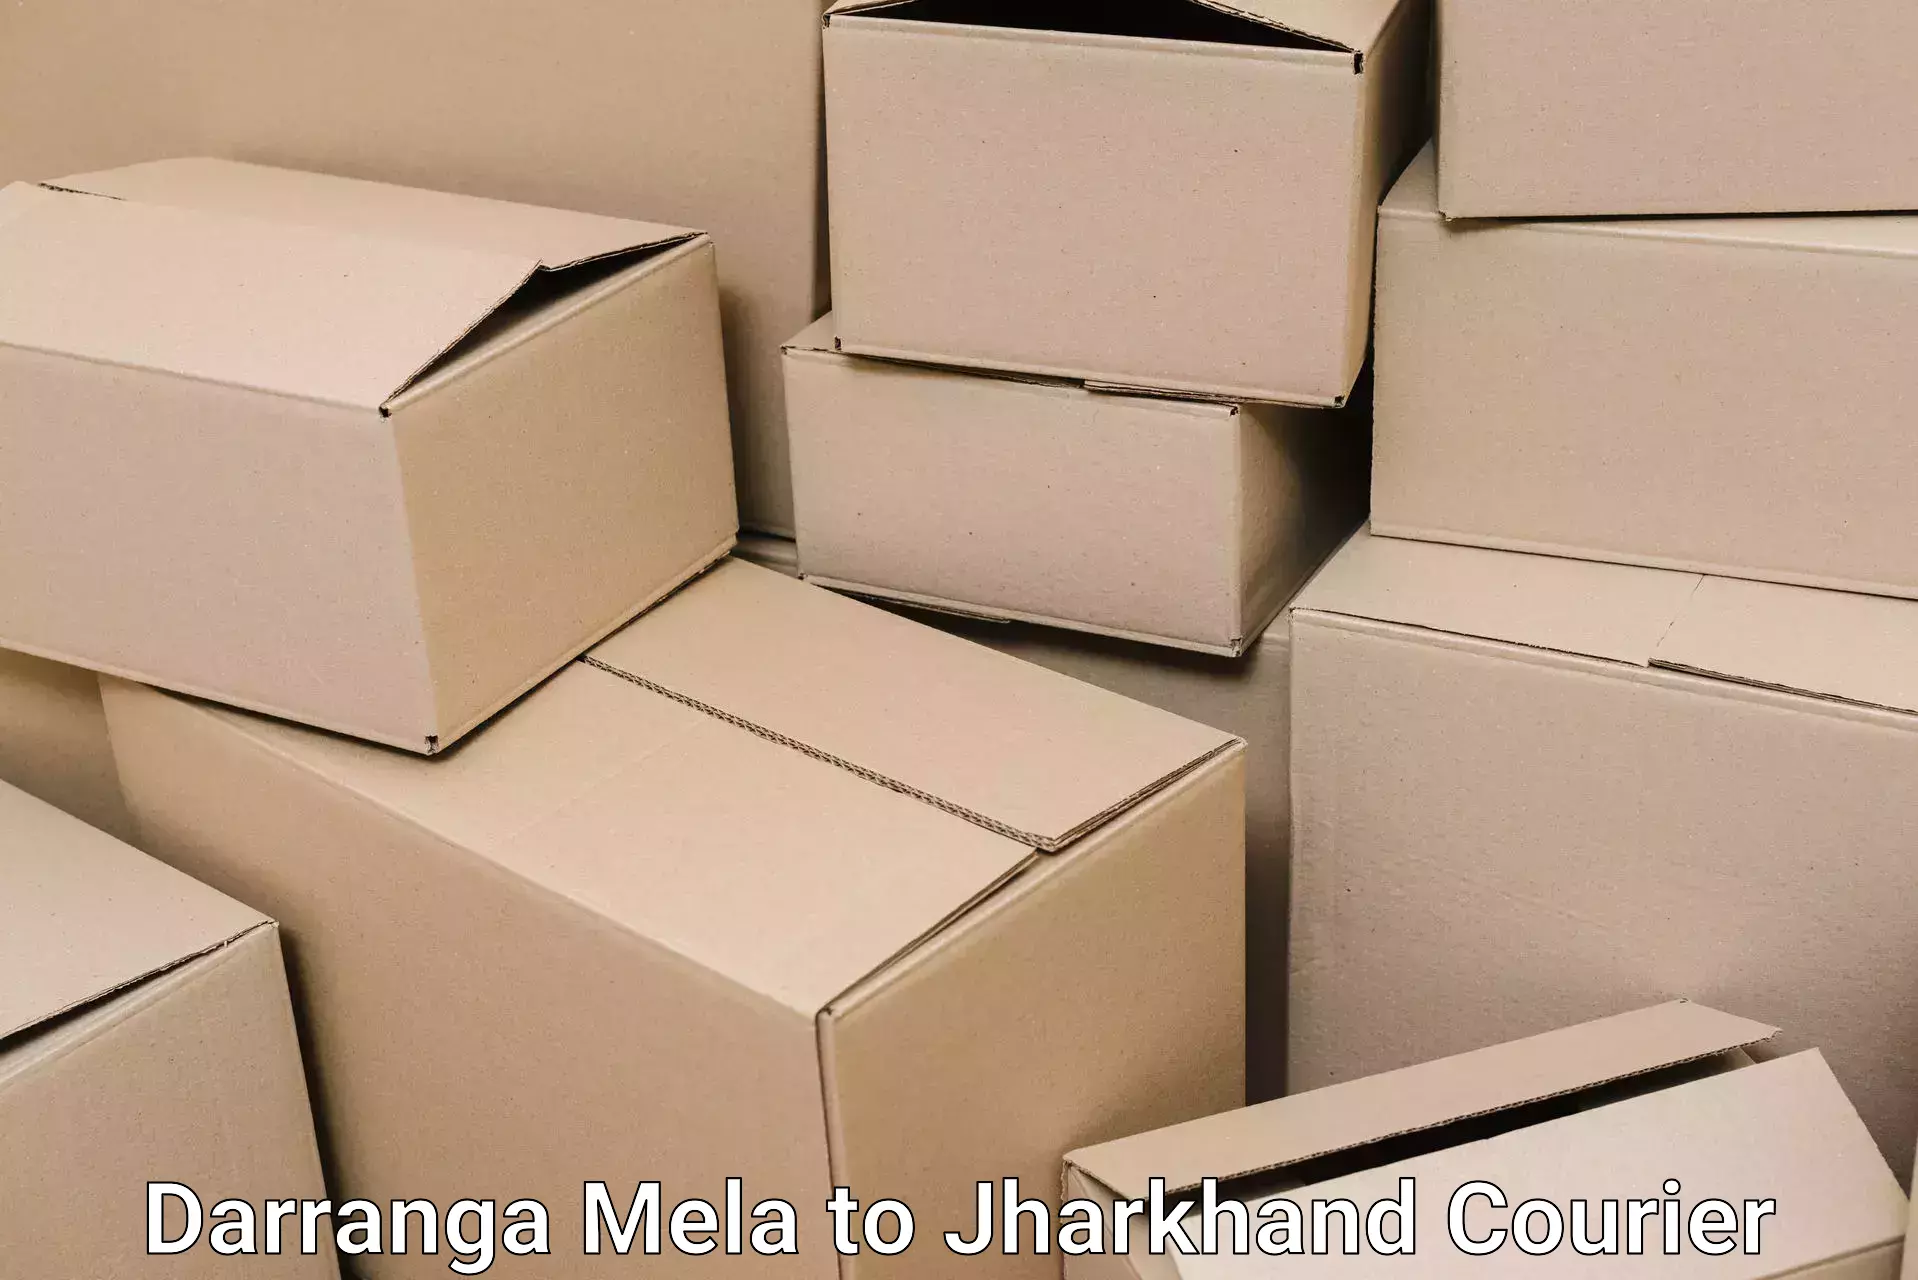 Efficient moving company Darranga Mela to Gomoh